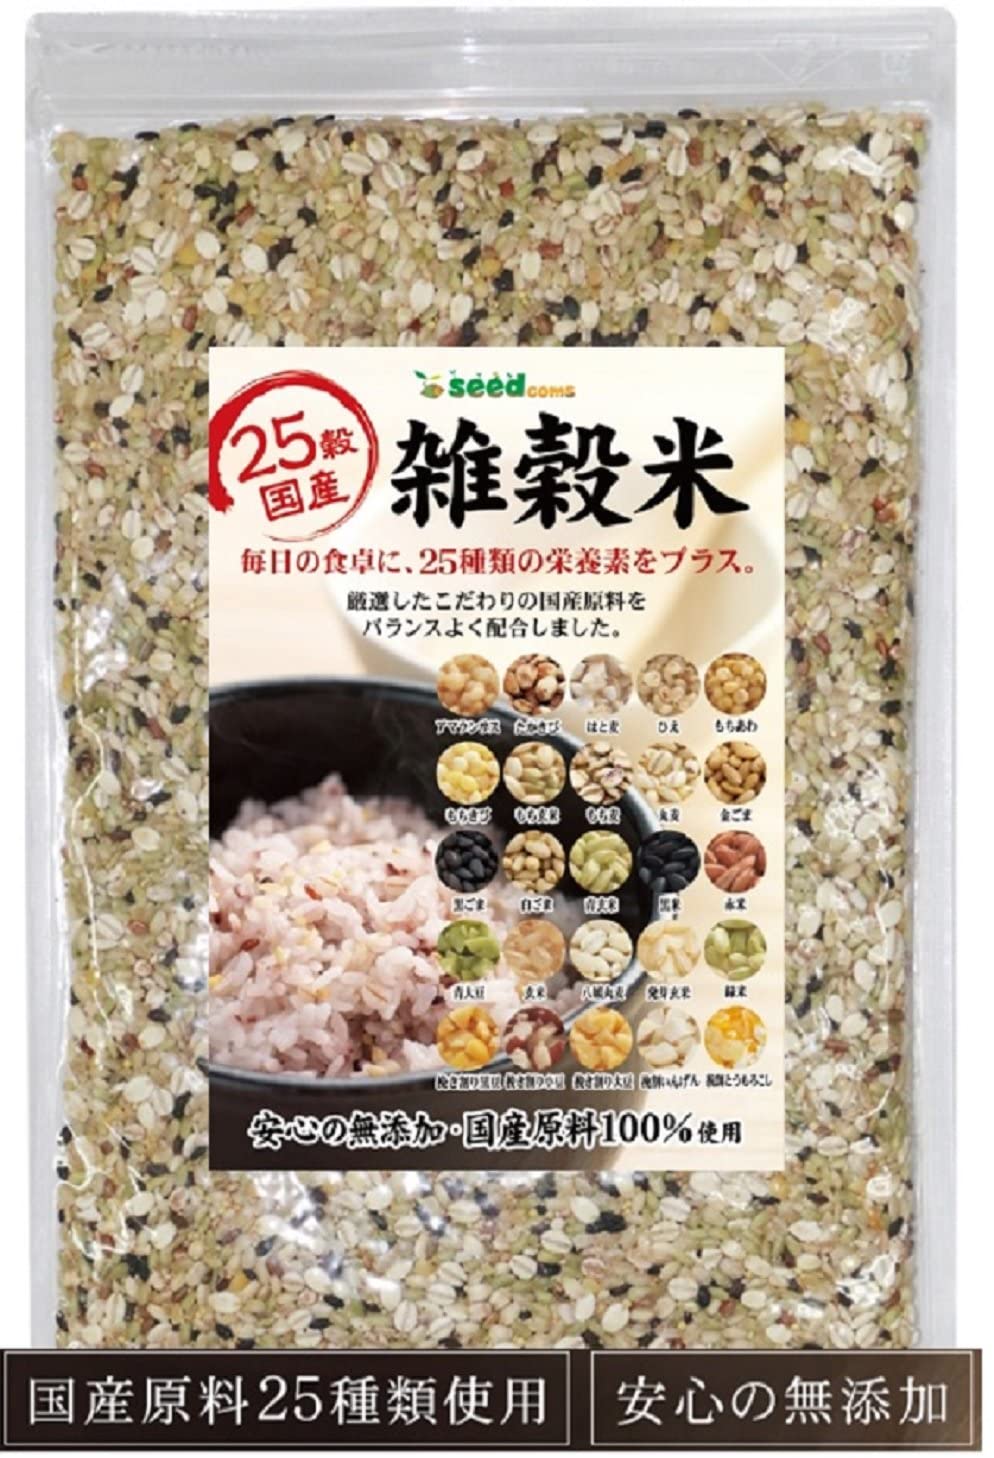 Сбалансированная смесь злаков 25 Grains Domestic Milled Rice SeedComs, 500 гр